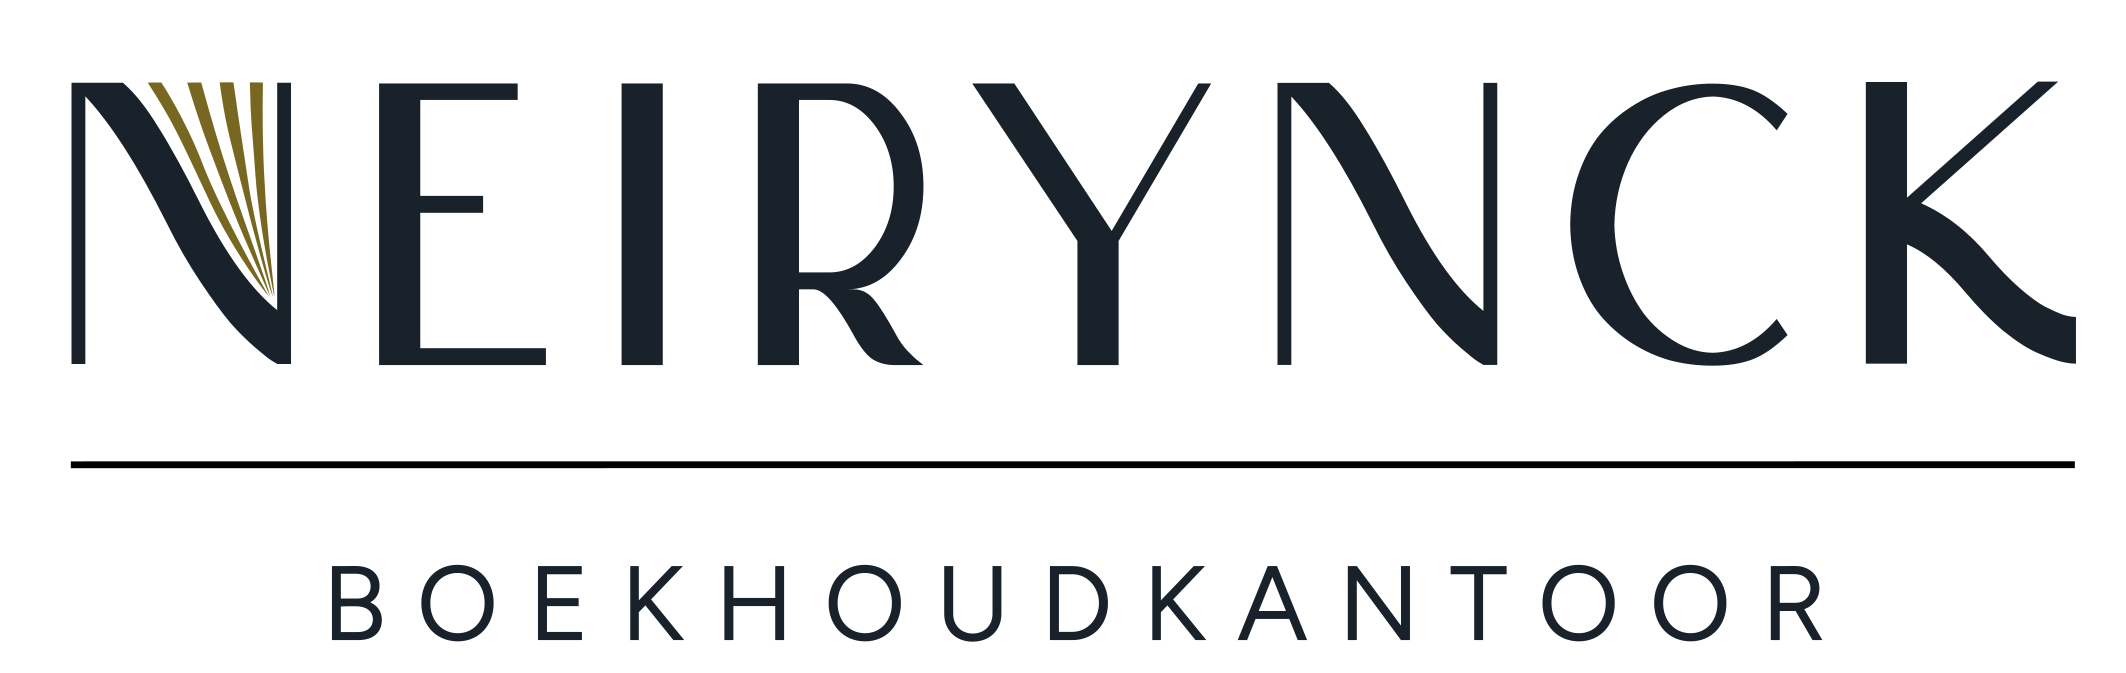 Logo van Boekhoudkantoor Neirynck